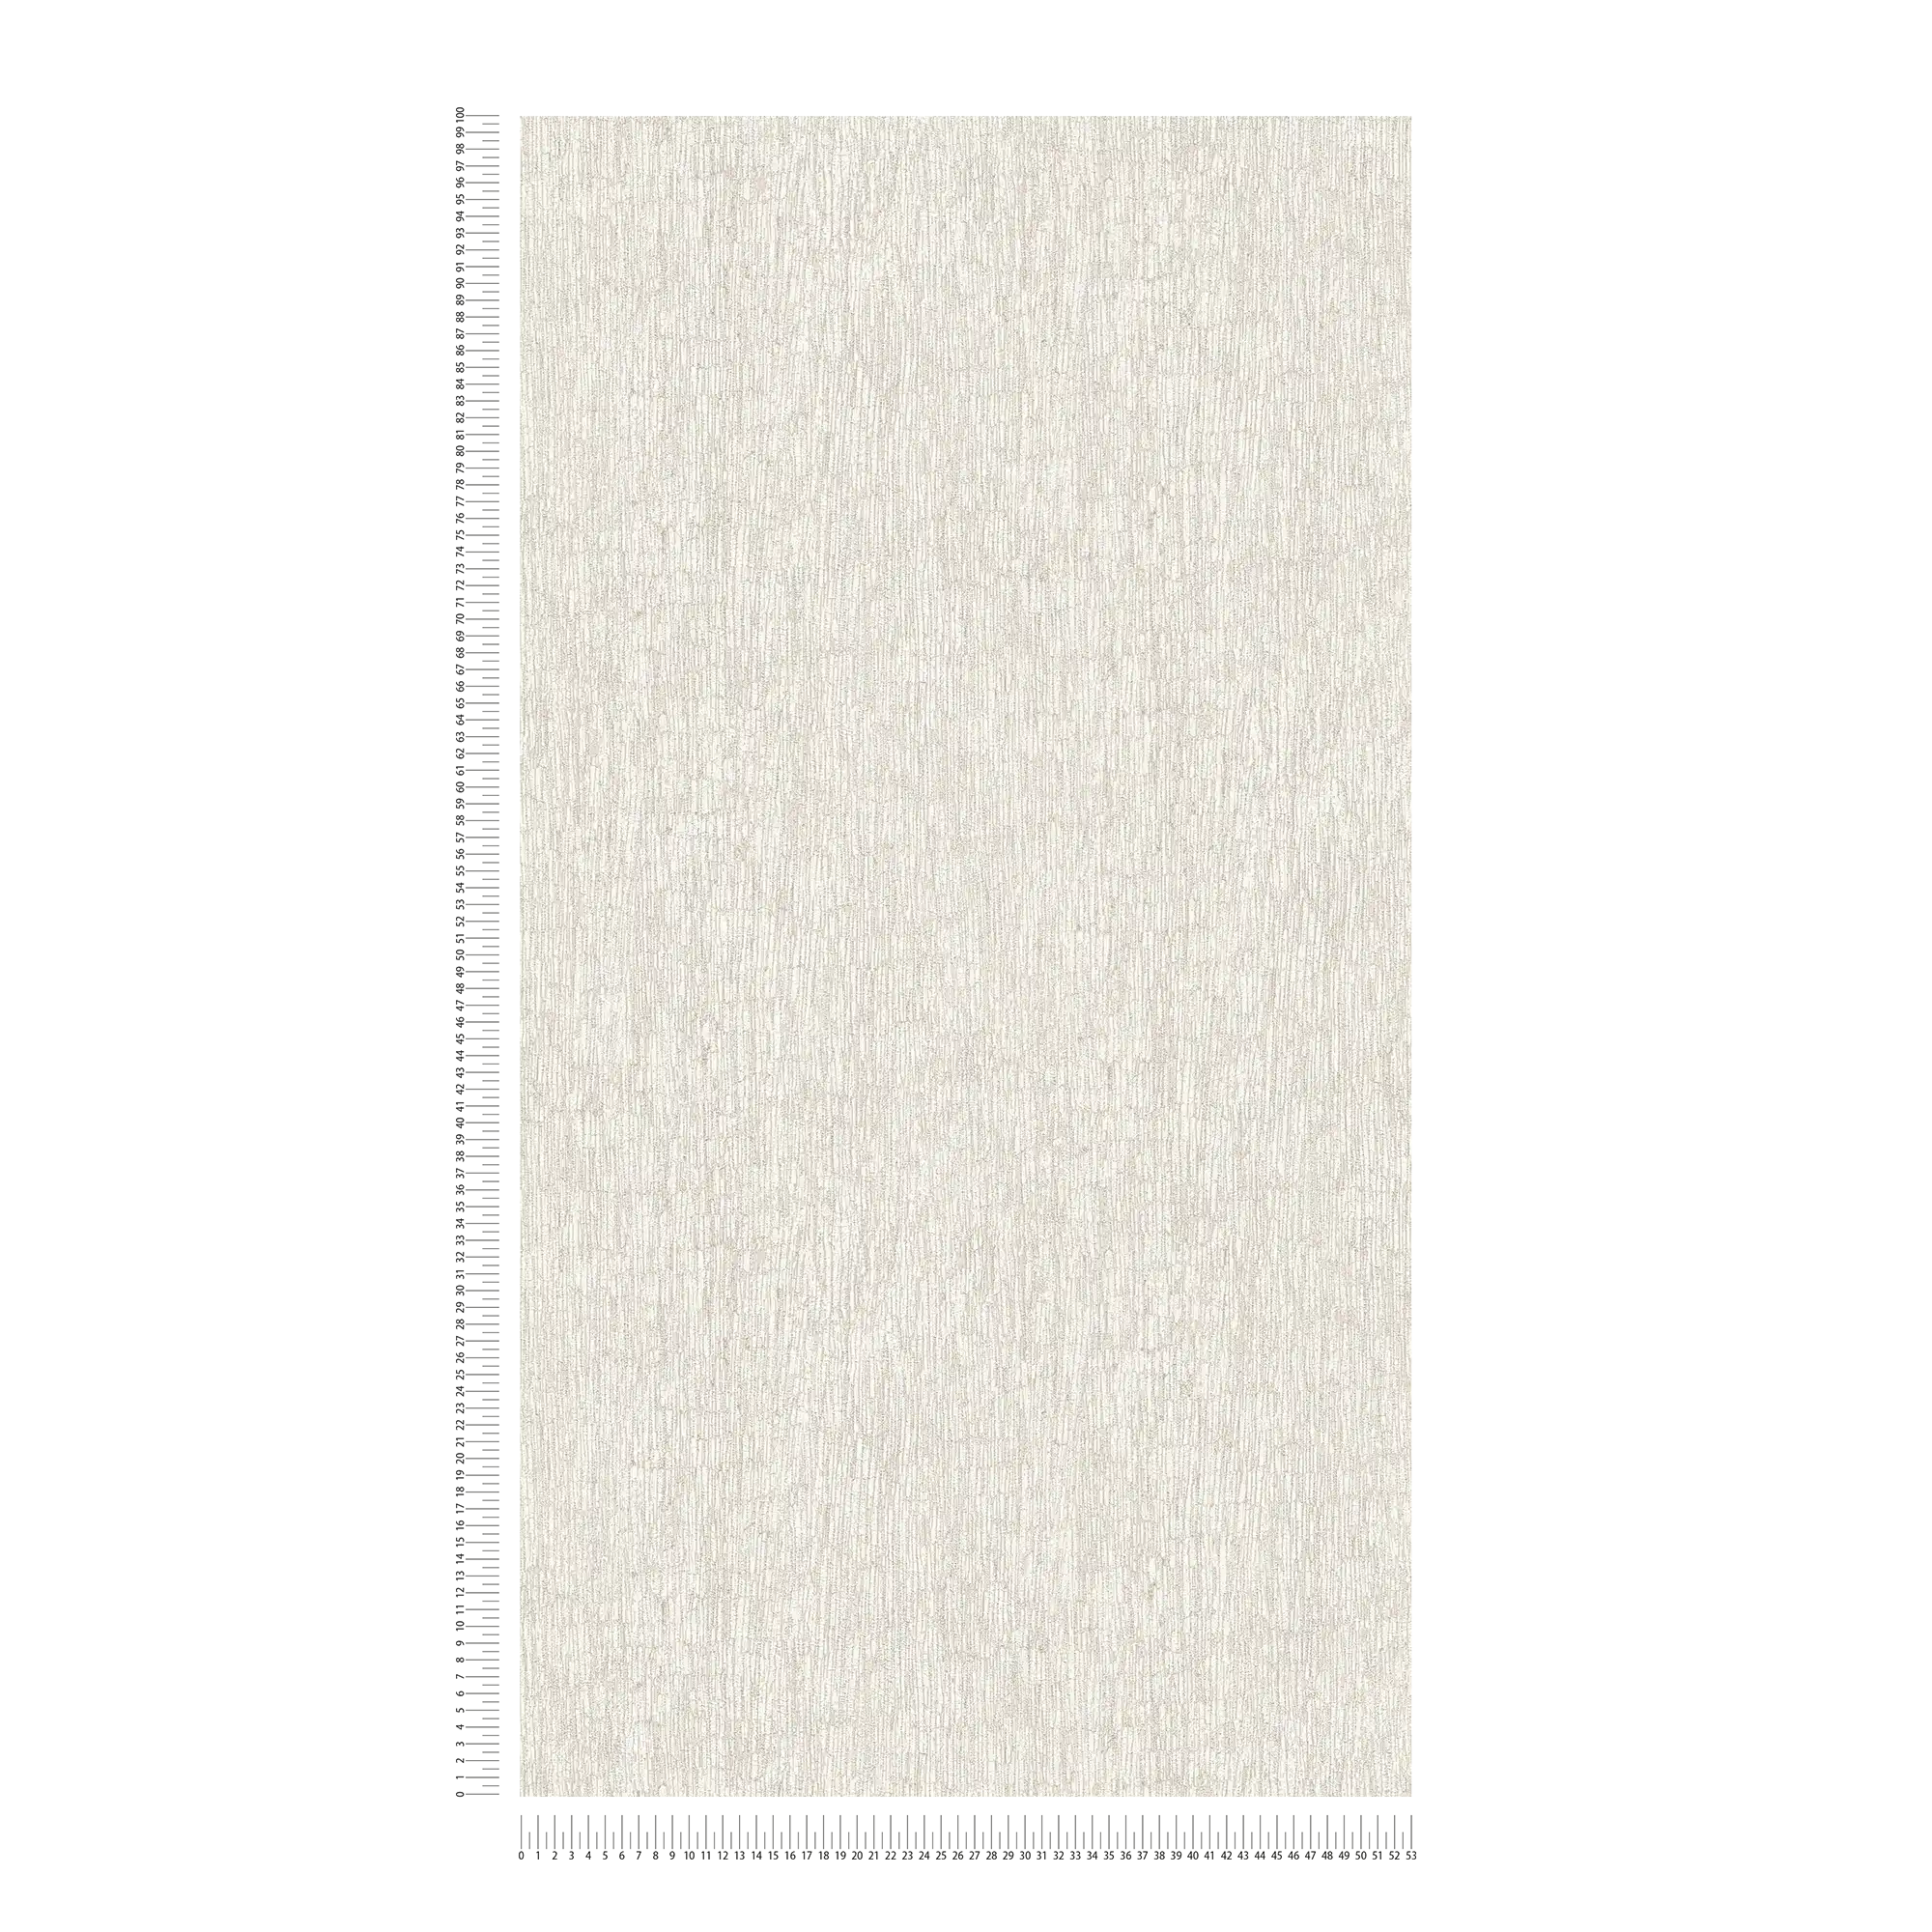             Carta da parati non tessuta in aspetto tessile, leggermente lucido - bianco, grigio, argento
        